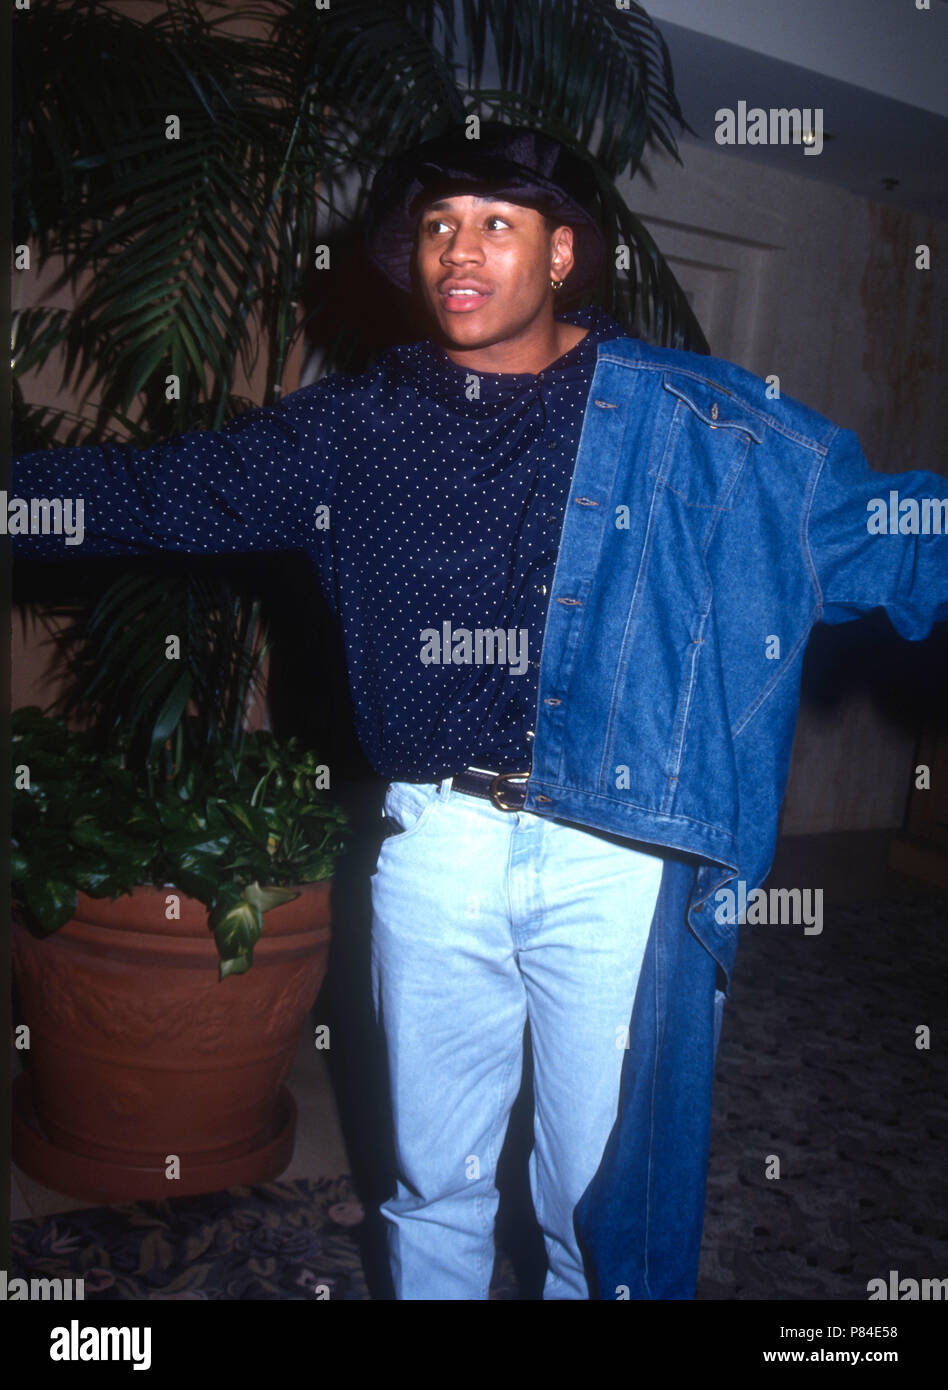 UNIVERSAL City, CA - febbraio 15: Rapper/attore LL Cool J avvistamento su Febbraio 15, 1992 a Universal Sheraton in città universale, California. Foto di Barry re/Alamy Stock Photo Foto Stock